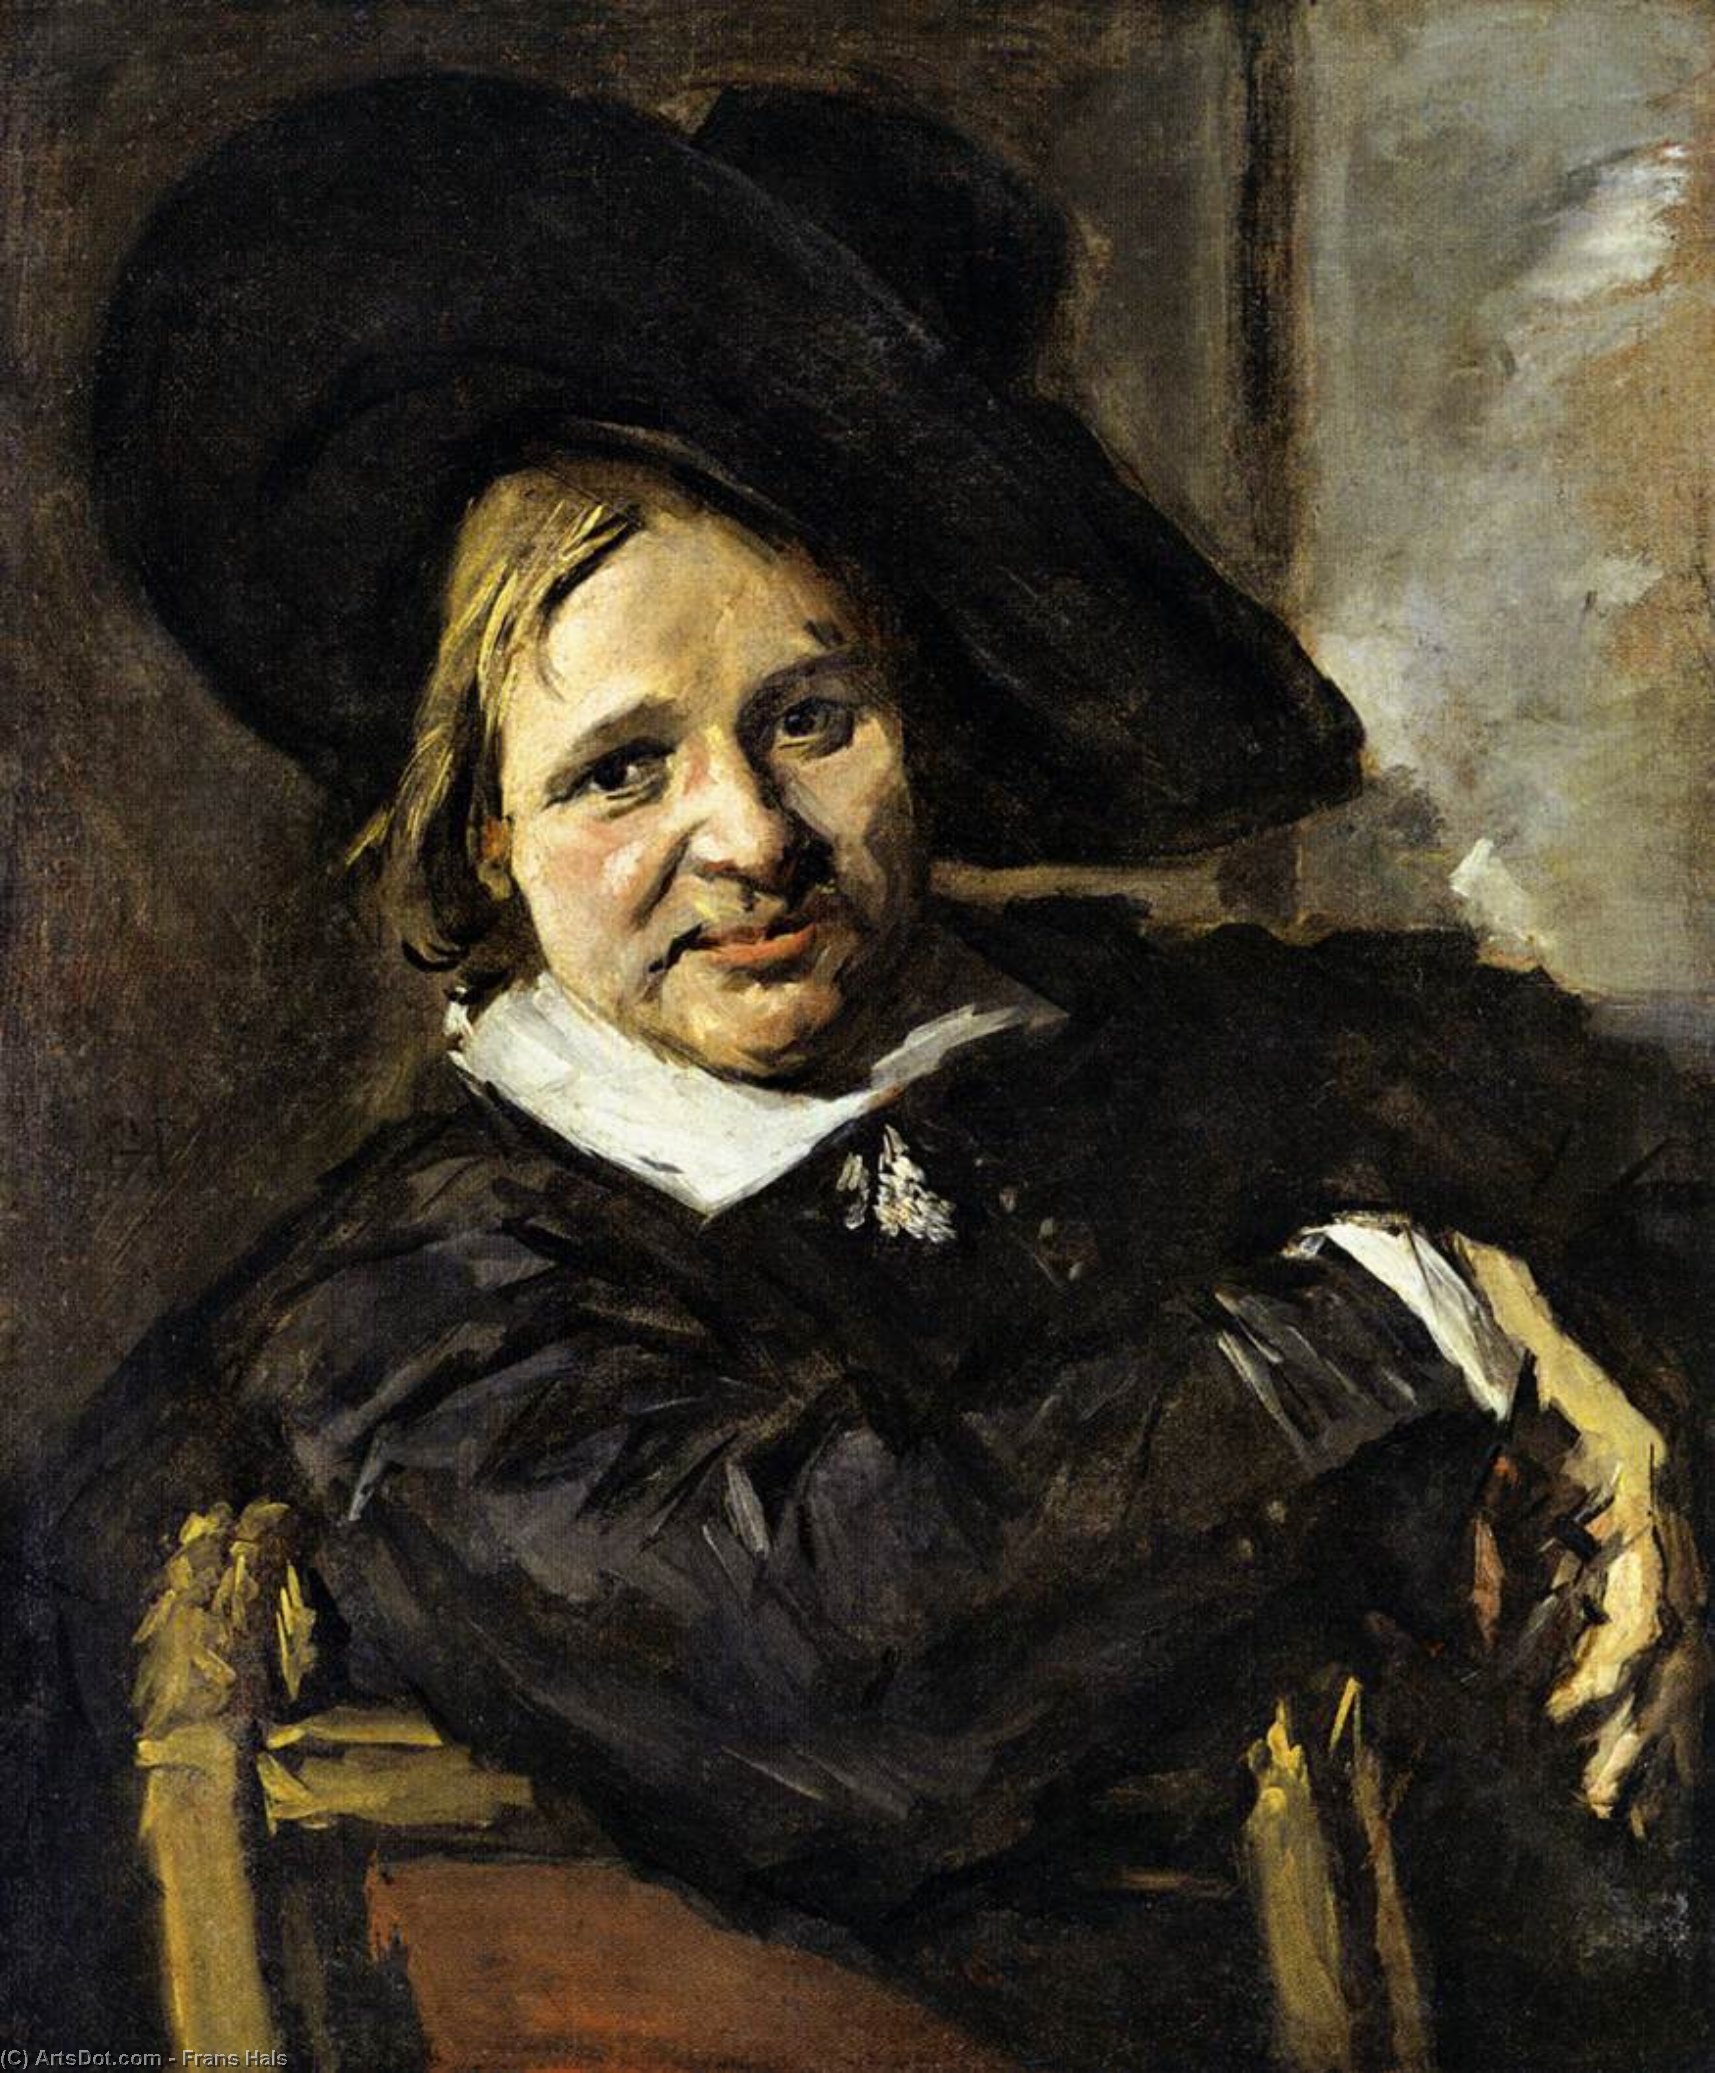 WikiOO.org - אנציקלופדיה לאמנויות יפות - ציור, יצירות אמנות Frans Hals - Portrait of a Man in a Slouch Hat